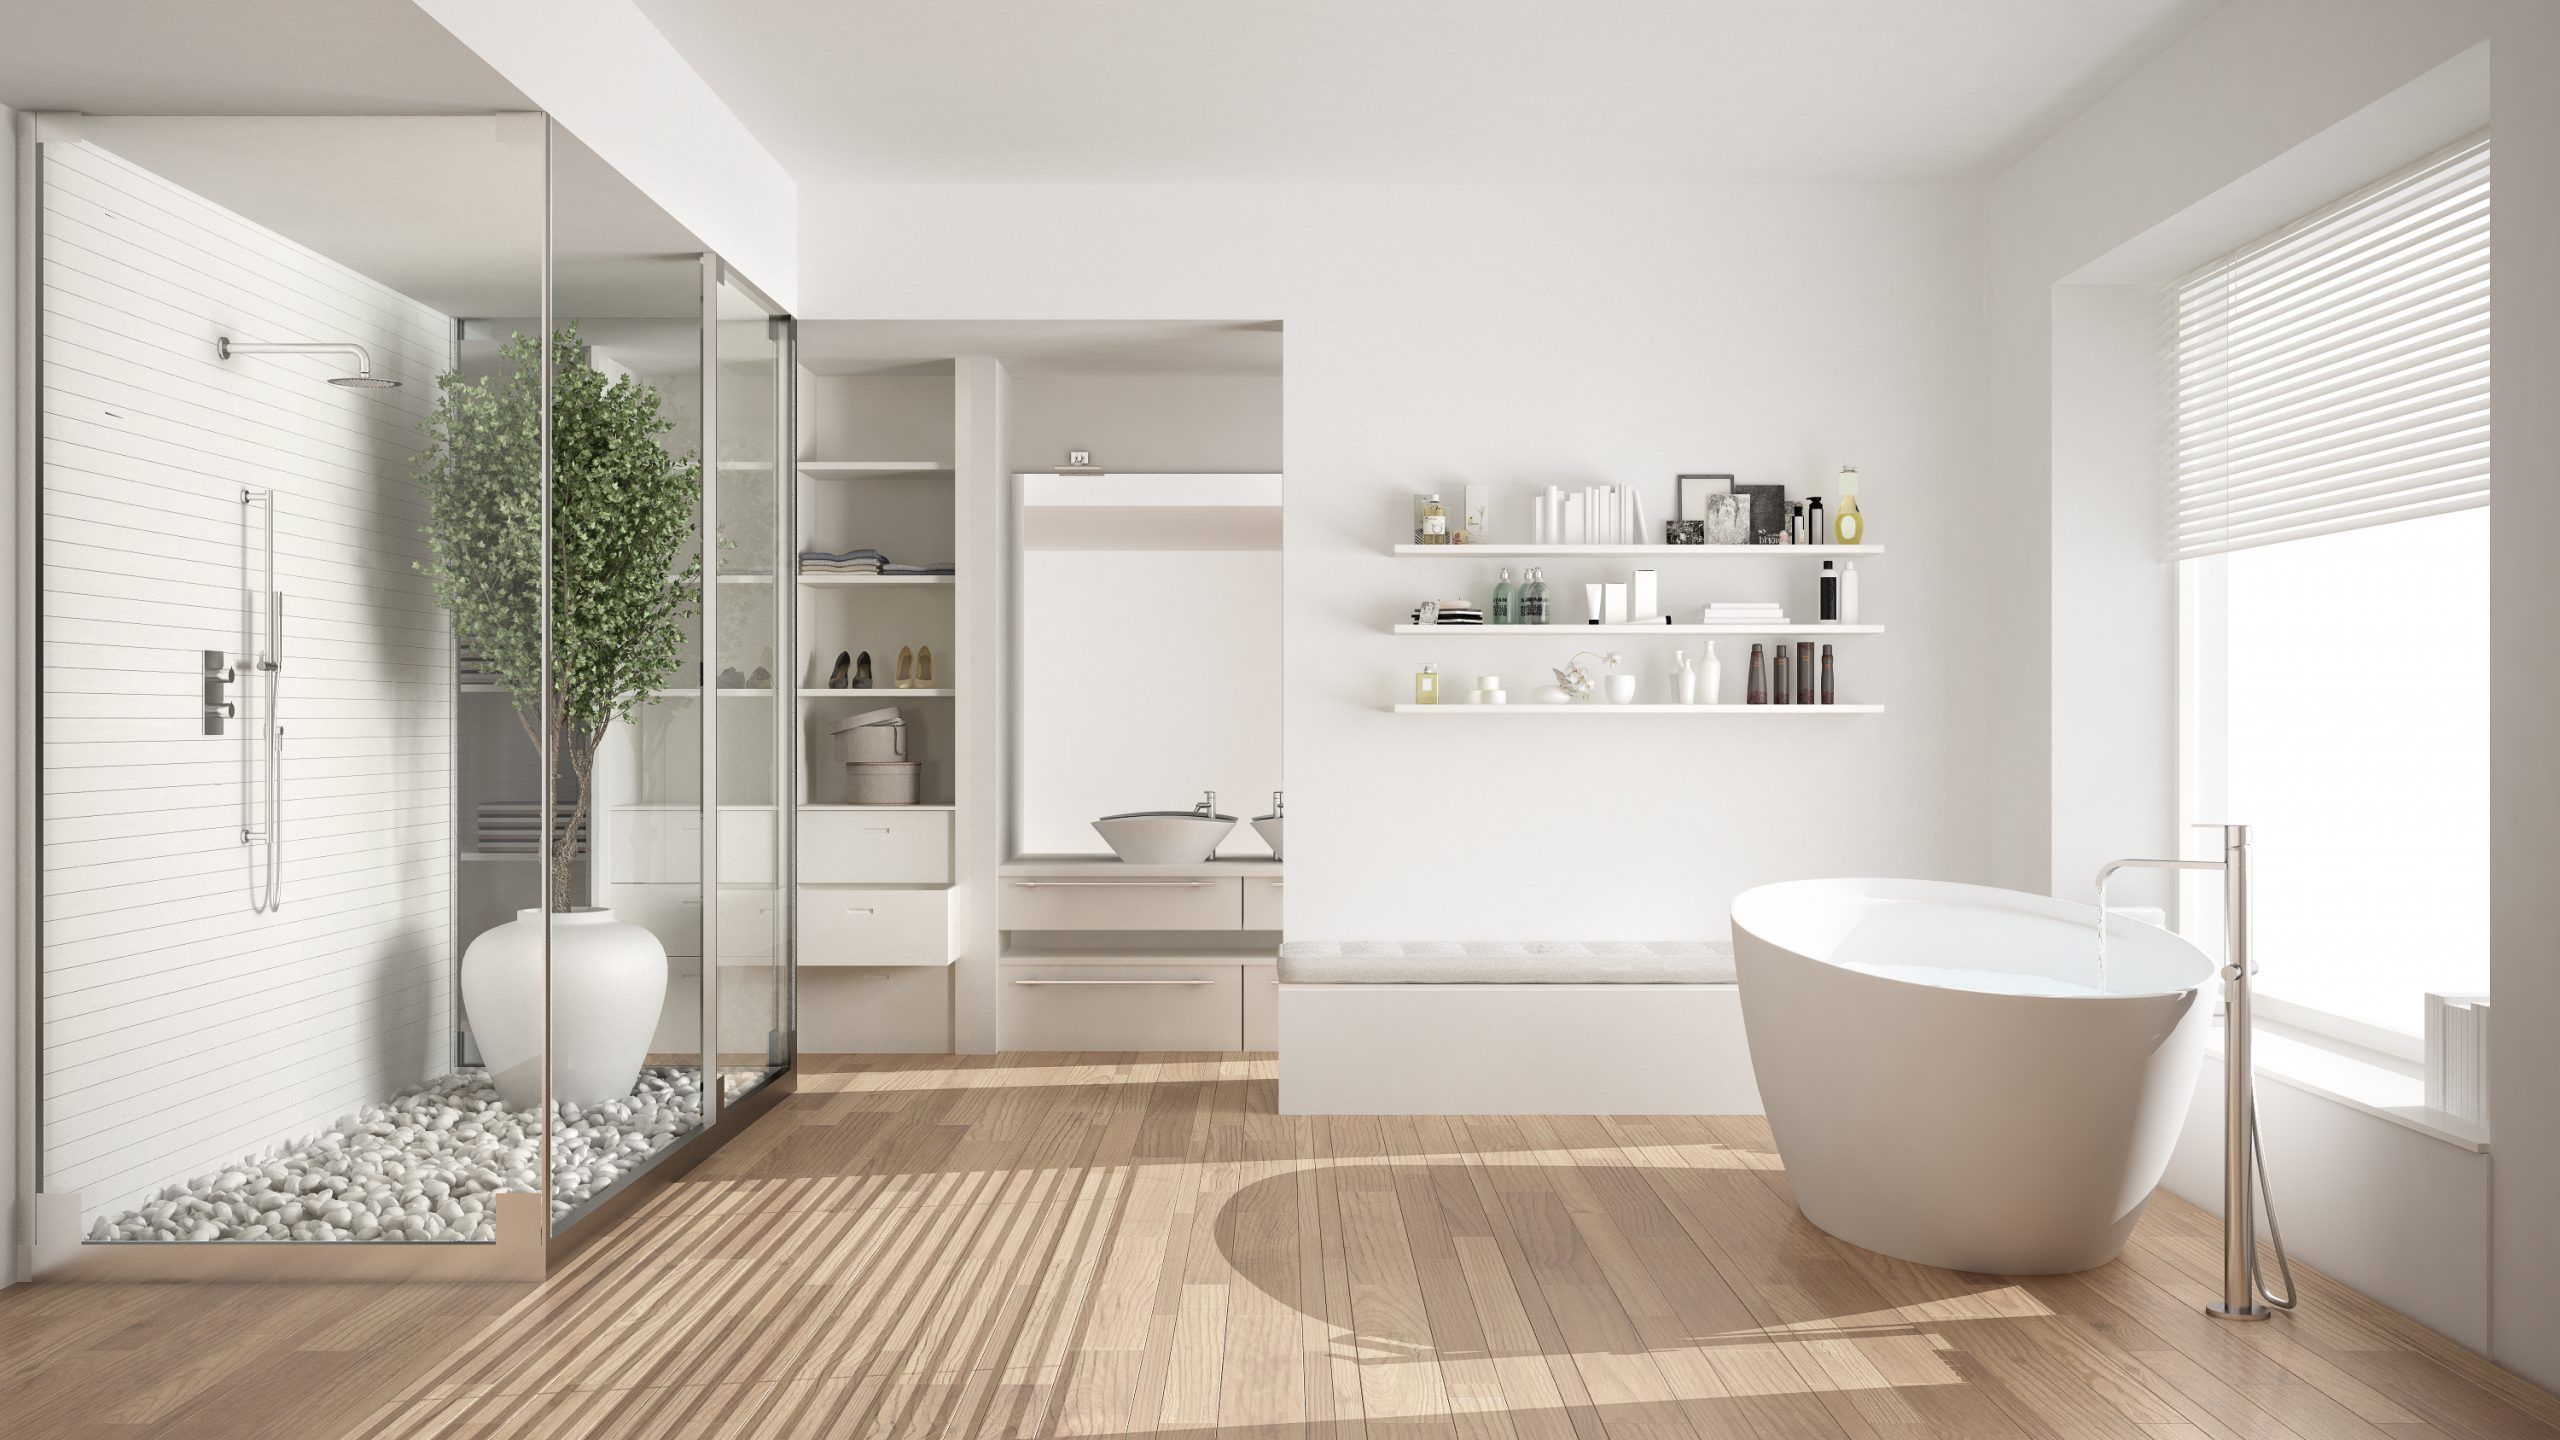 via punt Momentum Een houten vloer in de badkamer, kan dit? | Floortec